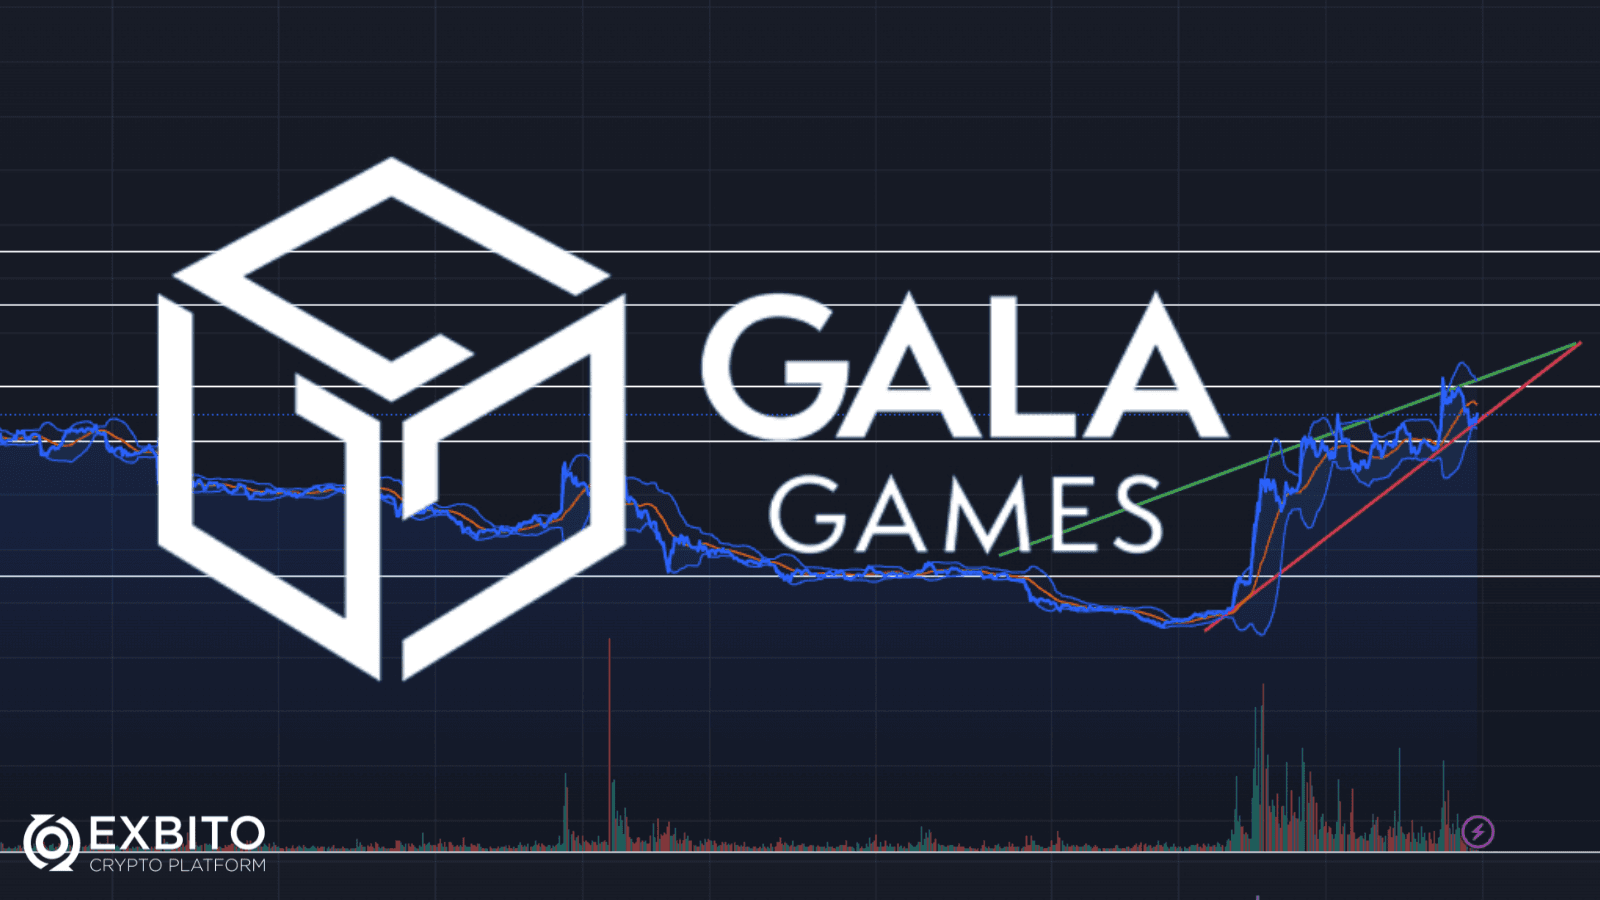 گالا گیمز (Gala Games) چیست؟